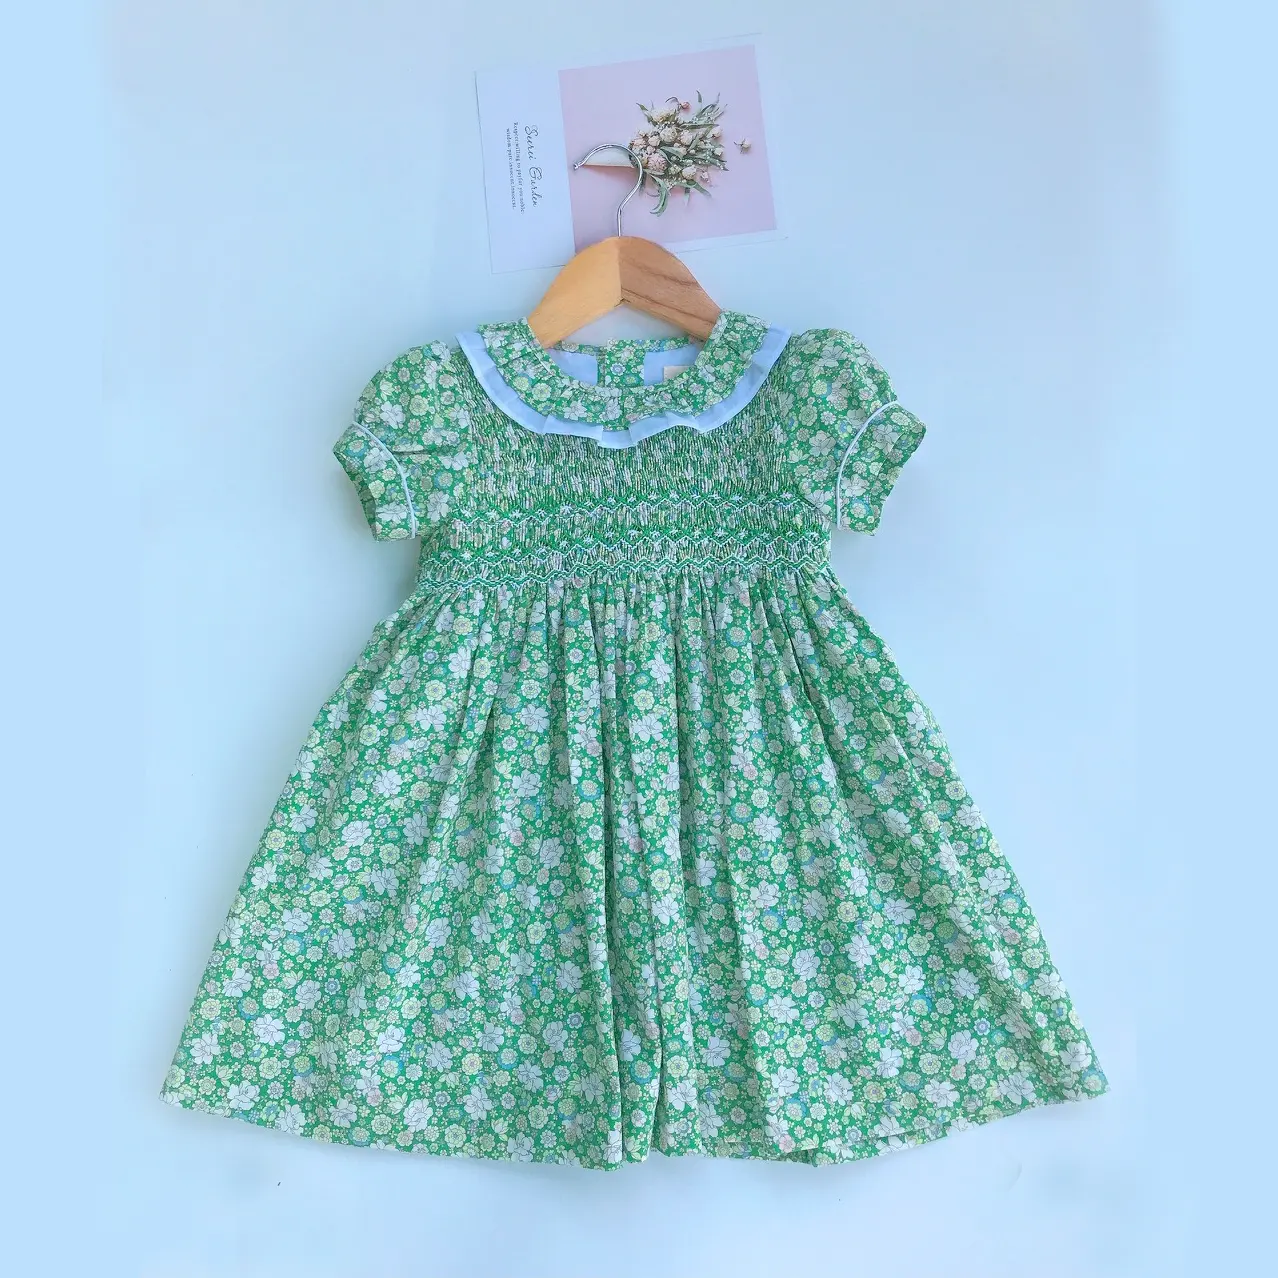 スモックグリーンAライングリーンドレス子供用プリンセスパーティードレス赤ちゃんの女の子に使用されるシックなロゴをカスタマイズVietNam製造 ..